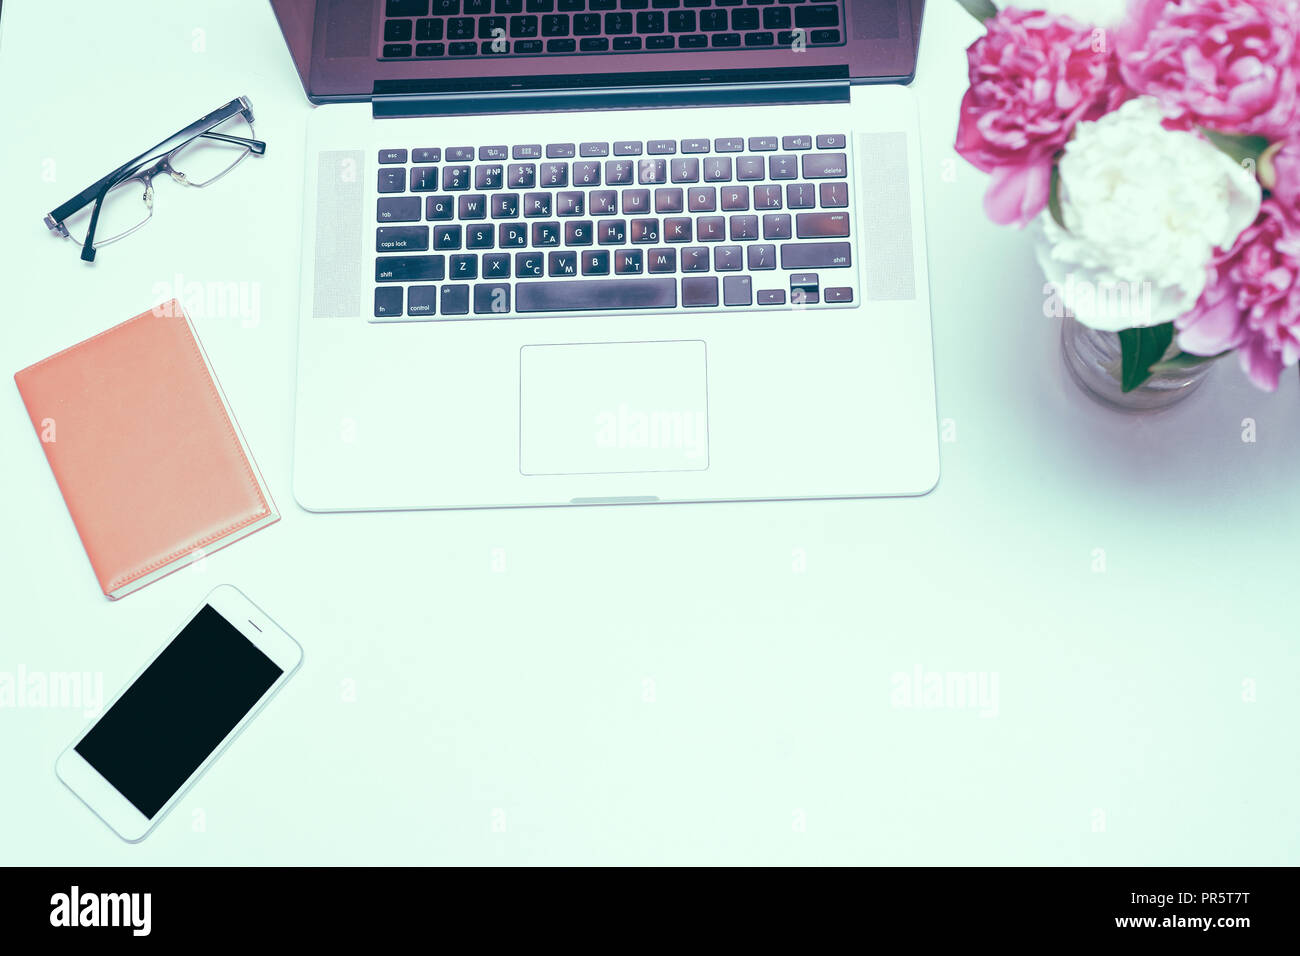 Il luogo di lavoro con computer portatile, bicchieri, notebook e bianco e rosa peonia fiori sul tavolo bianco sullo sfondo. Piatto, laici vista superiore Foto Stock